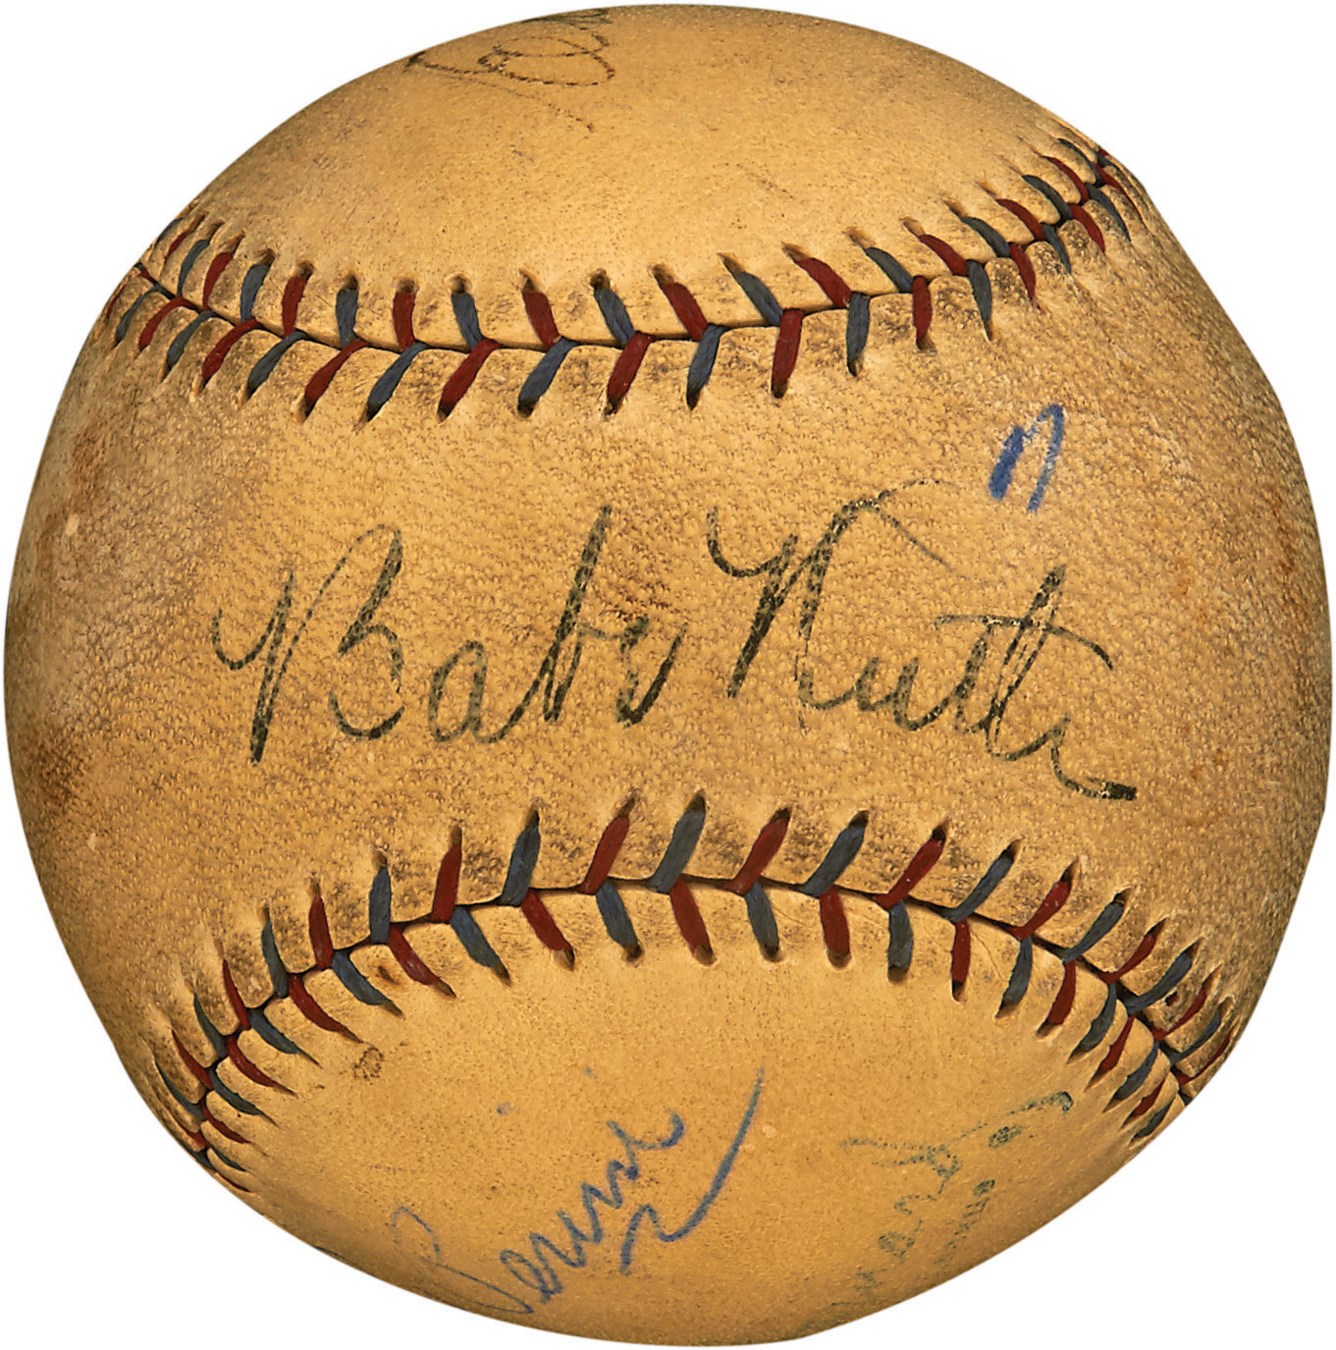 Babe Ruth & Lou Gehrig Multi-Signed Baseball